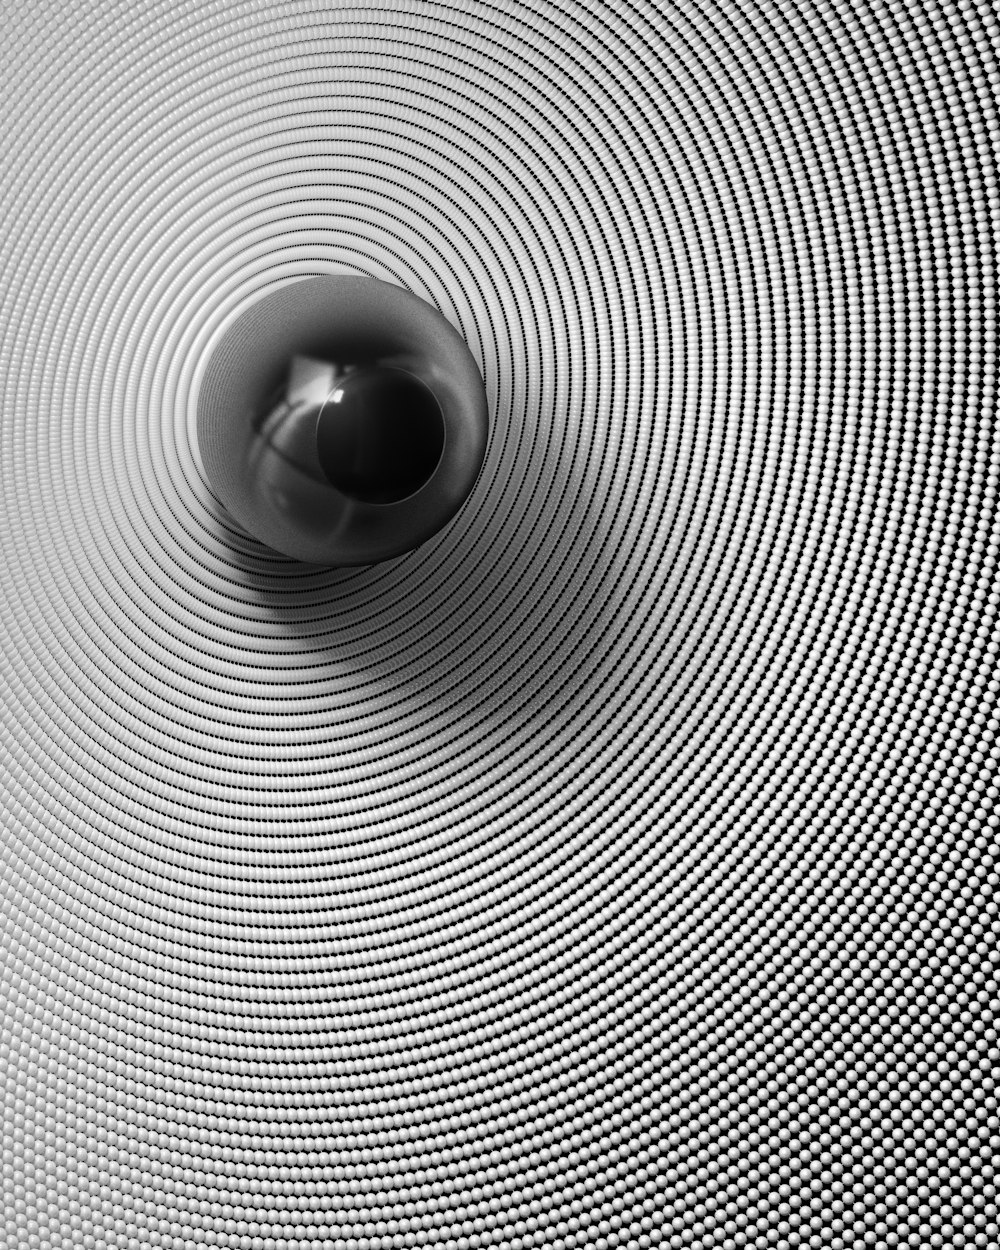 Una foto en blanco y negro de una esfera